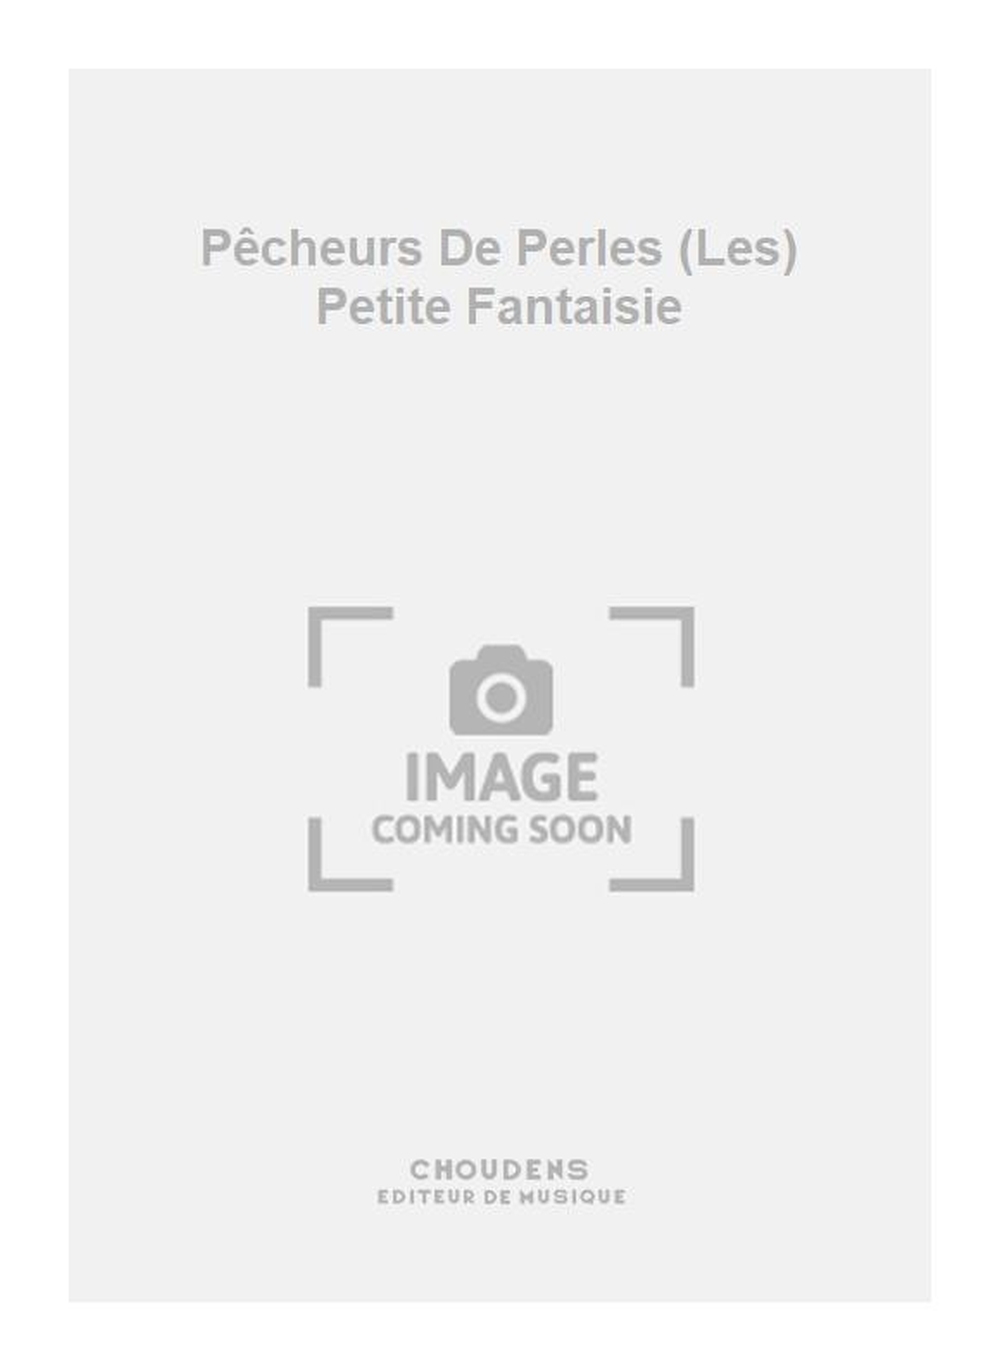 Georges Bizet: Pêcheurs De Perles (Les) Petite Fantaisie